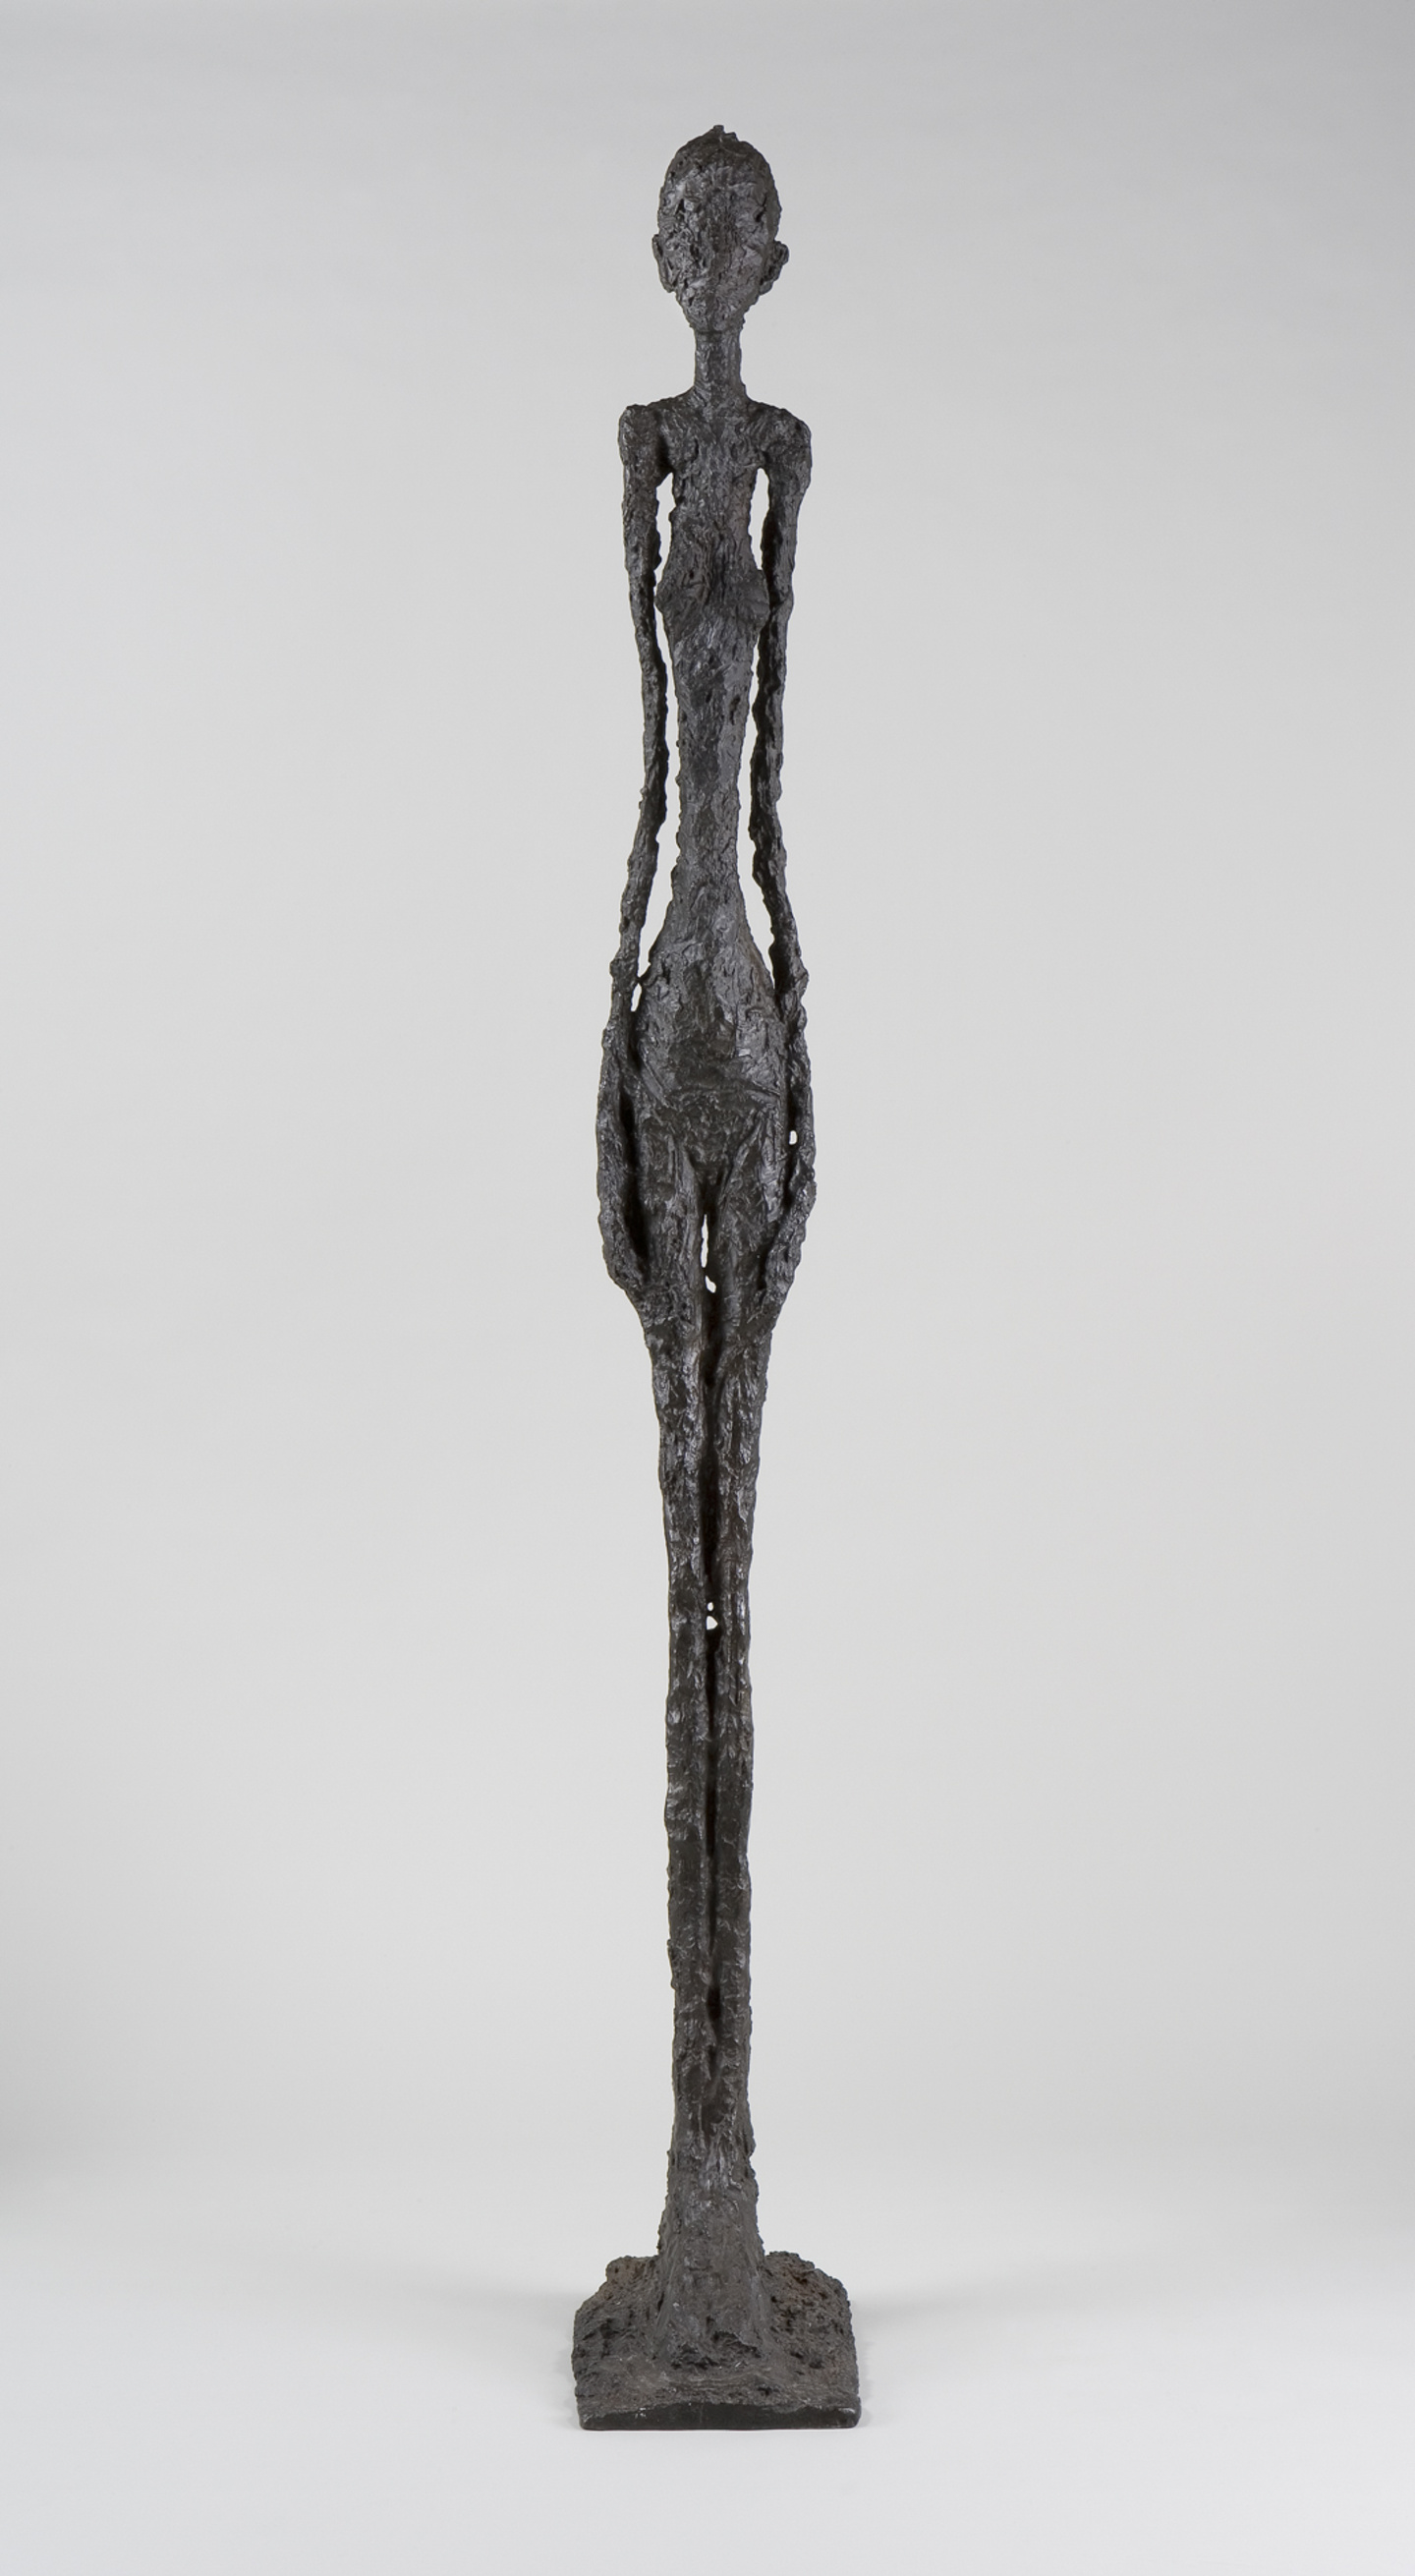 Fondation Giacometti - Alberto Giacometti, Modernist Pioneer